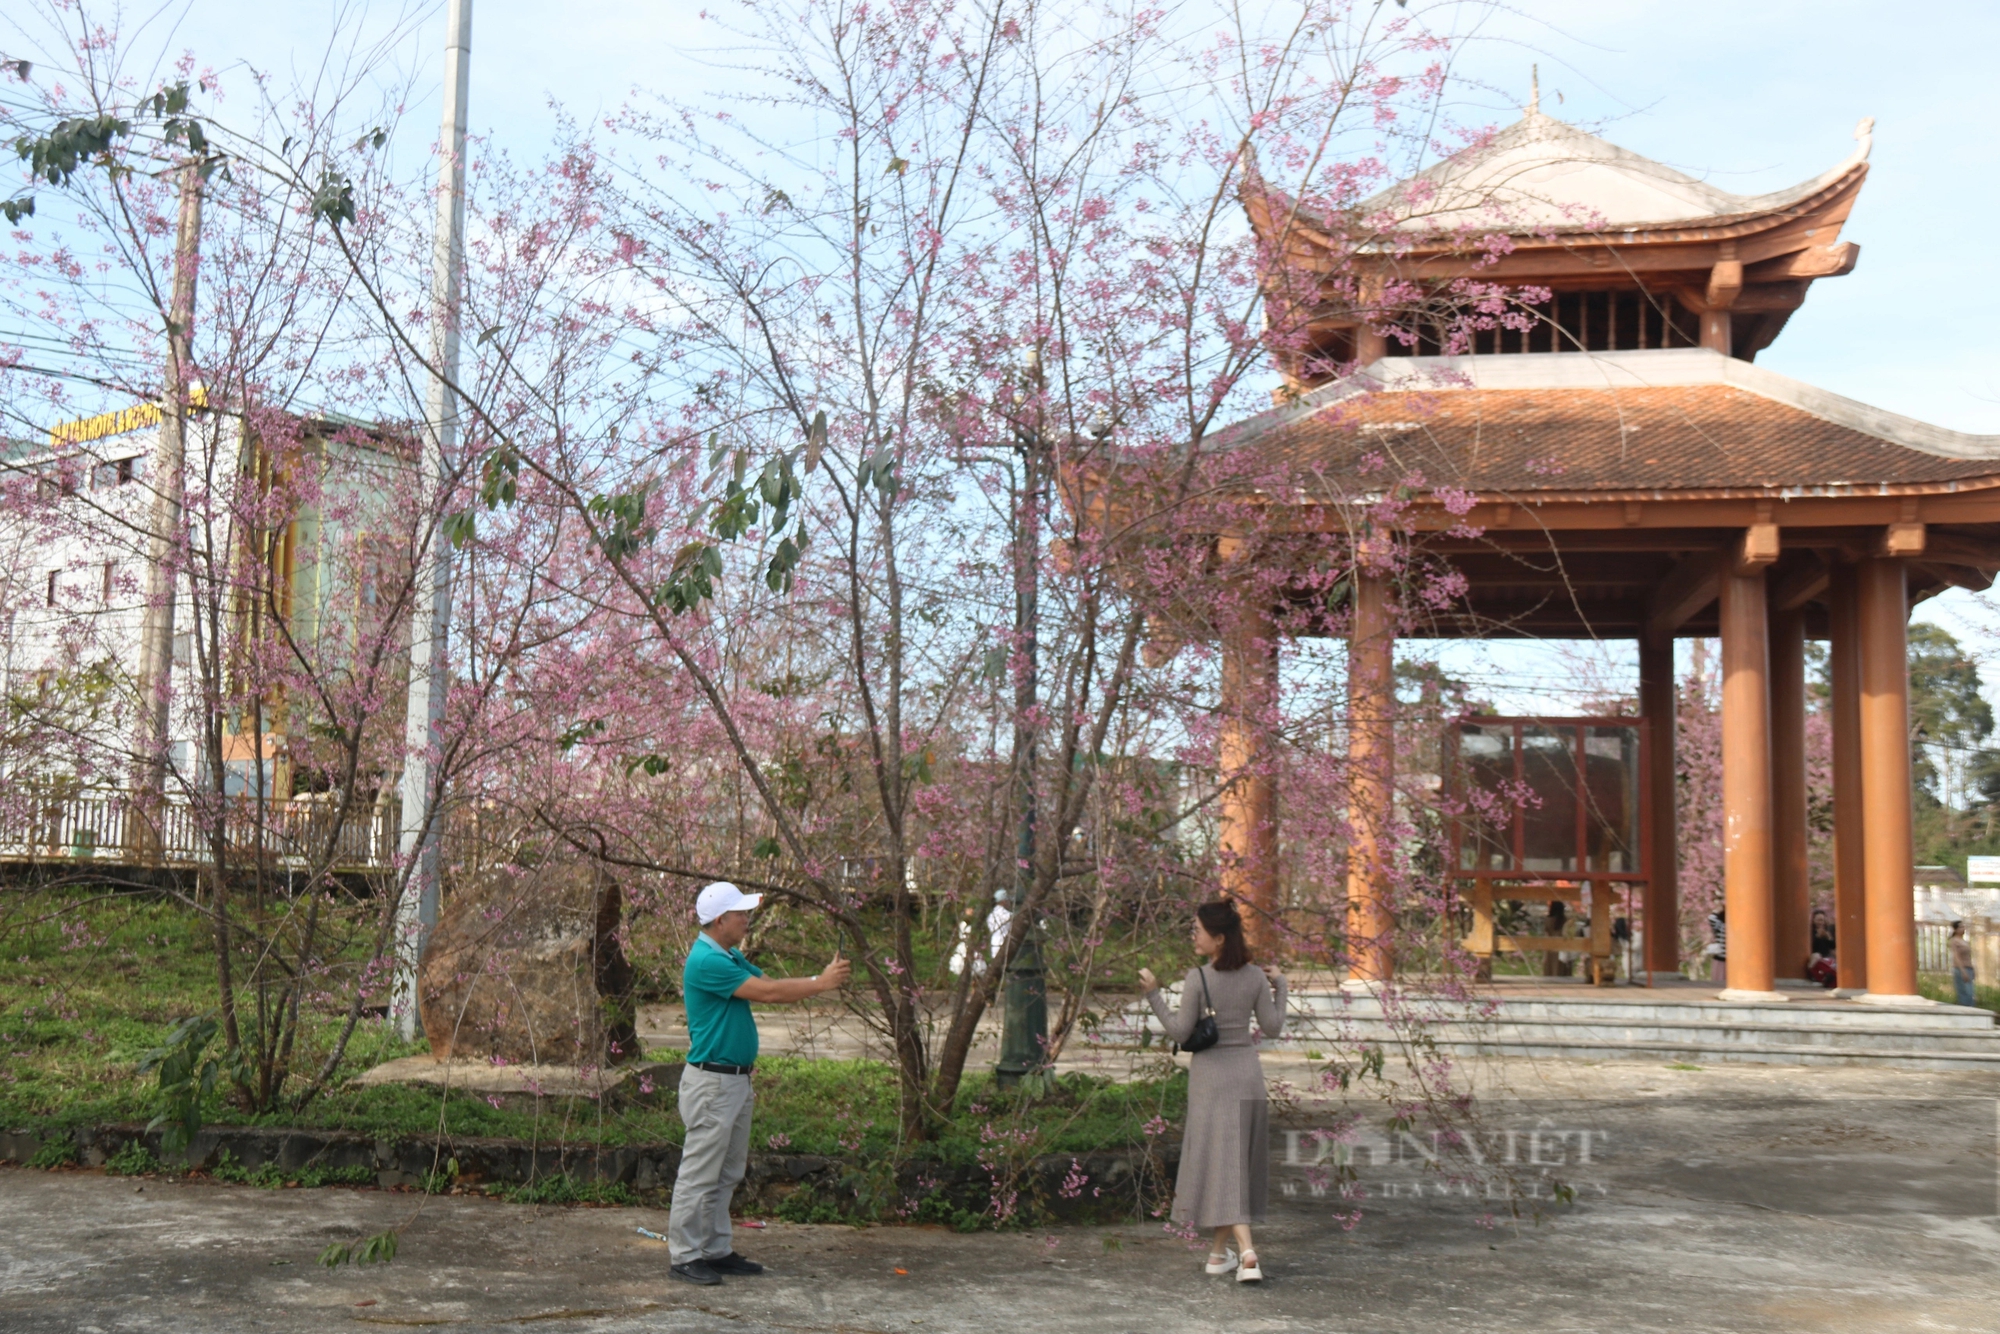 Hoa mai anh đào ở Kon Tum nở đẹp rực rỡ, du khách nườm nượp đến check-in- Ảnh 3.